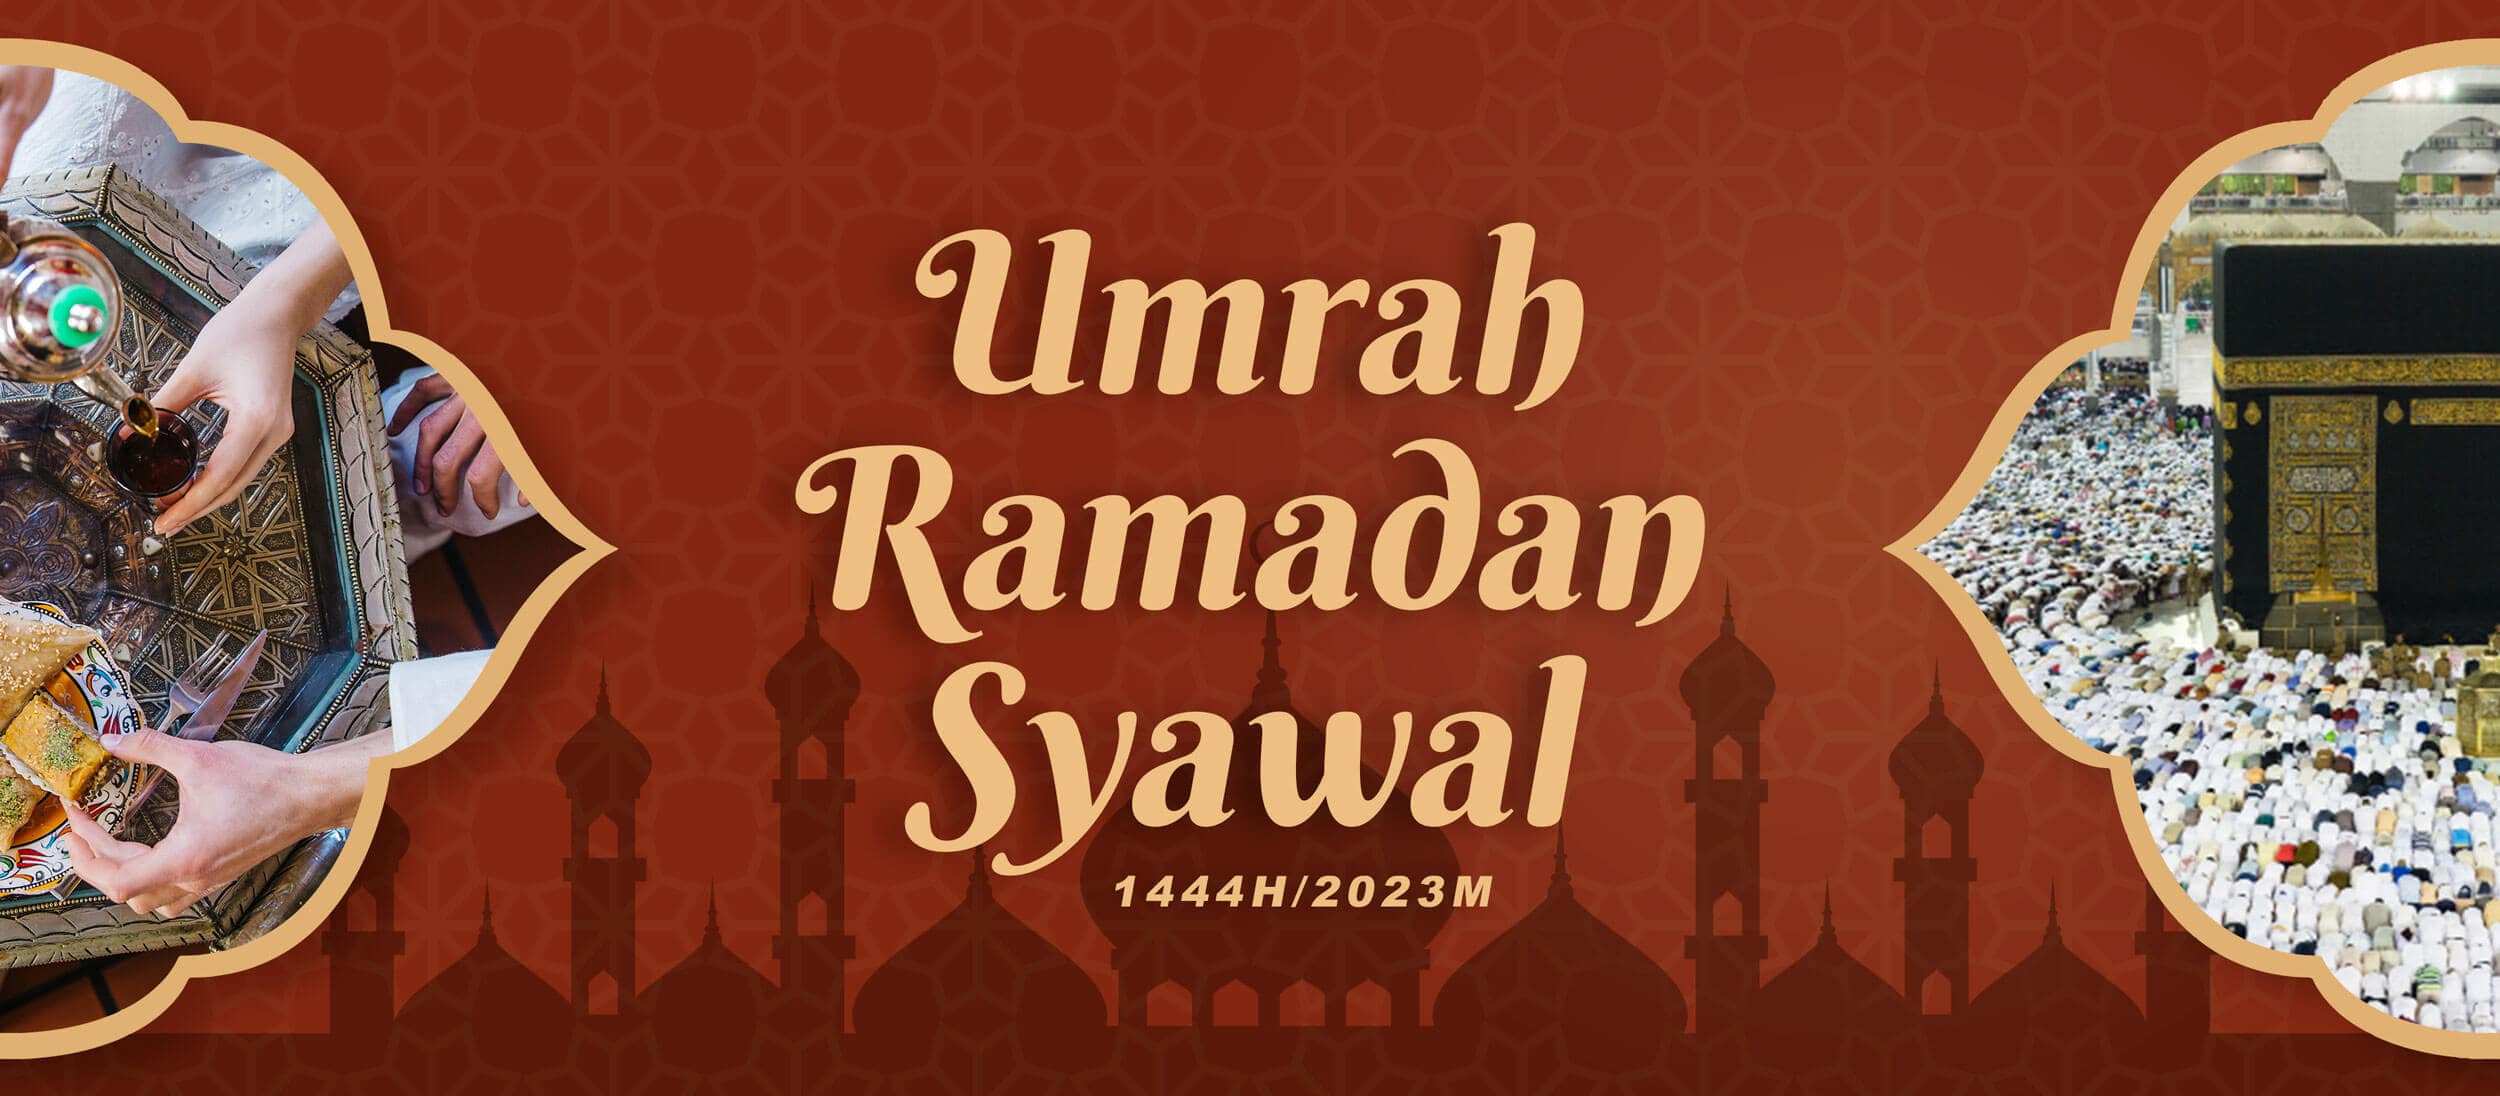 Umrah Ramadan Syawal